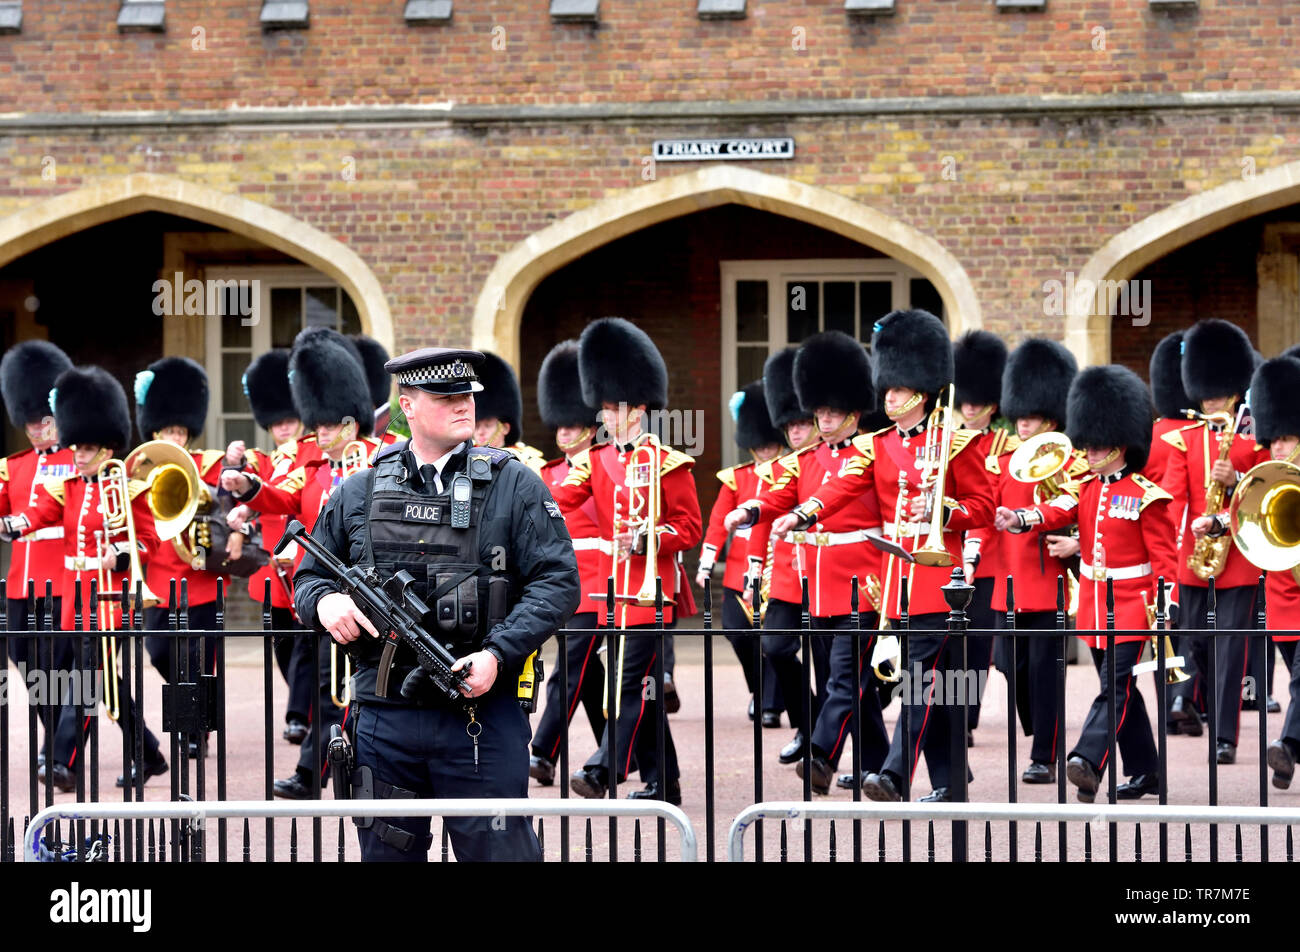 Londres, Inglaterra, Reino Unido. Oficial de policía armados de guardia en el convento corte, St James's Palace durante el cambio de guardia Foto de stock